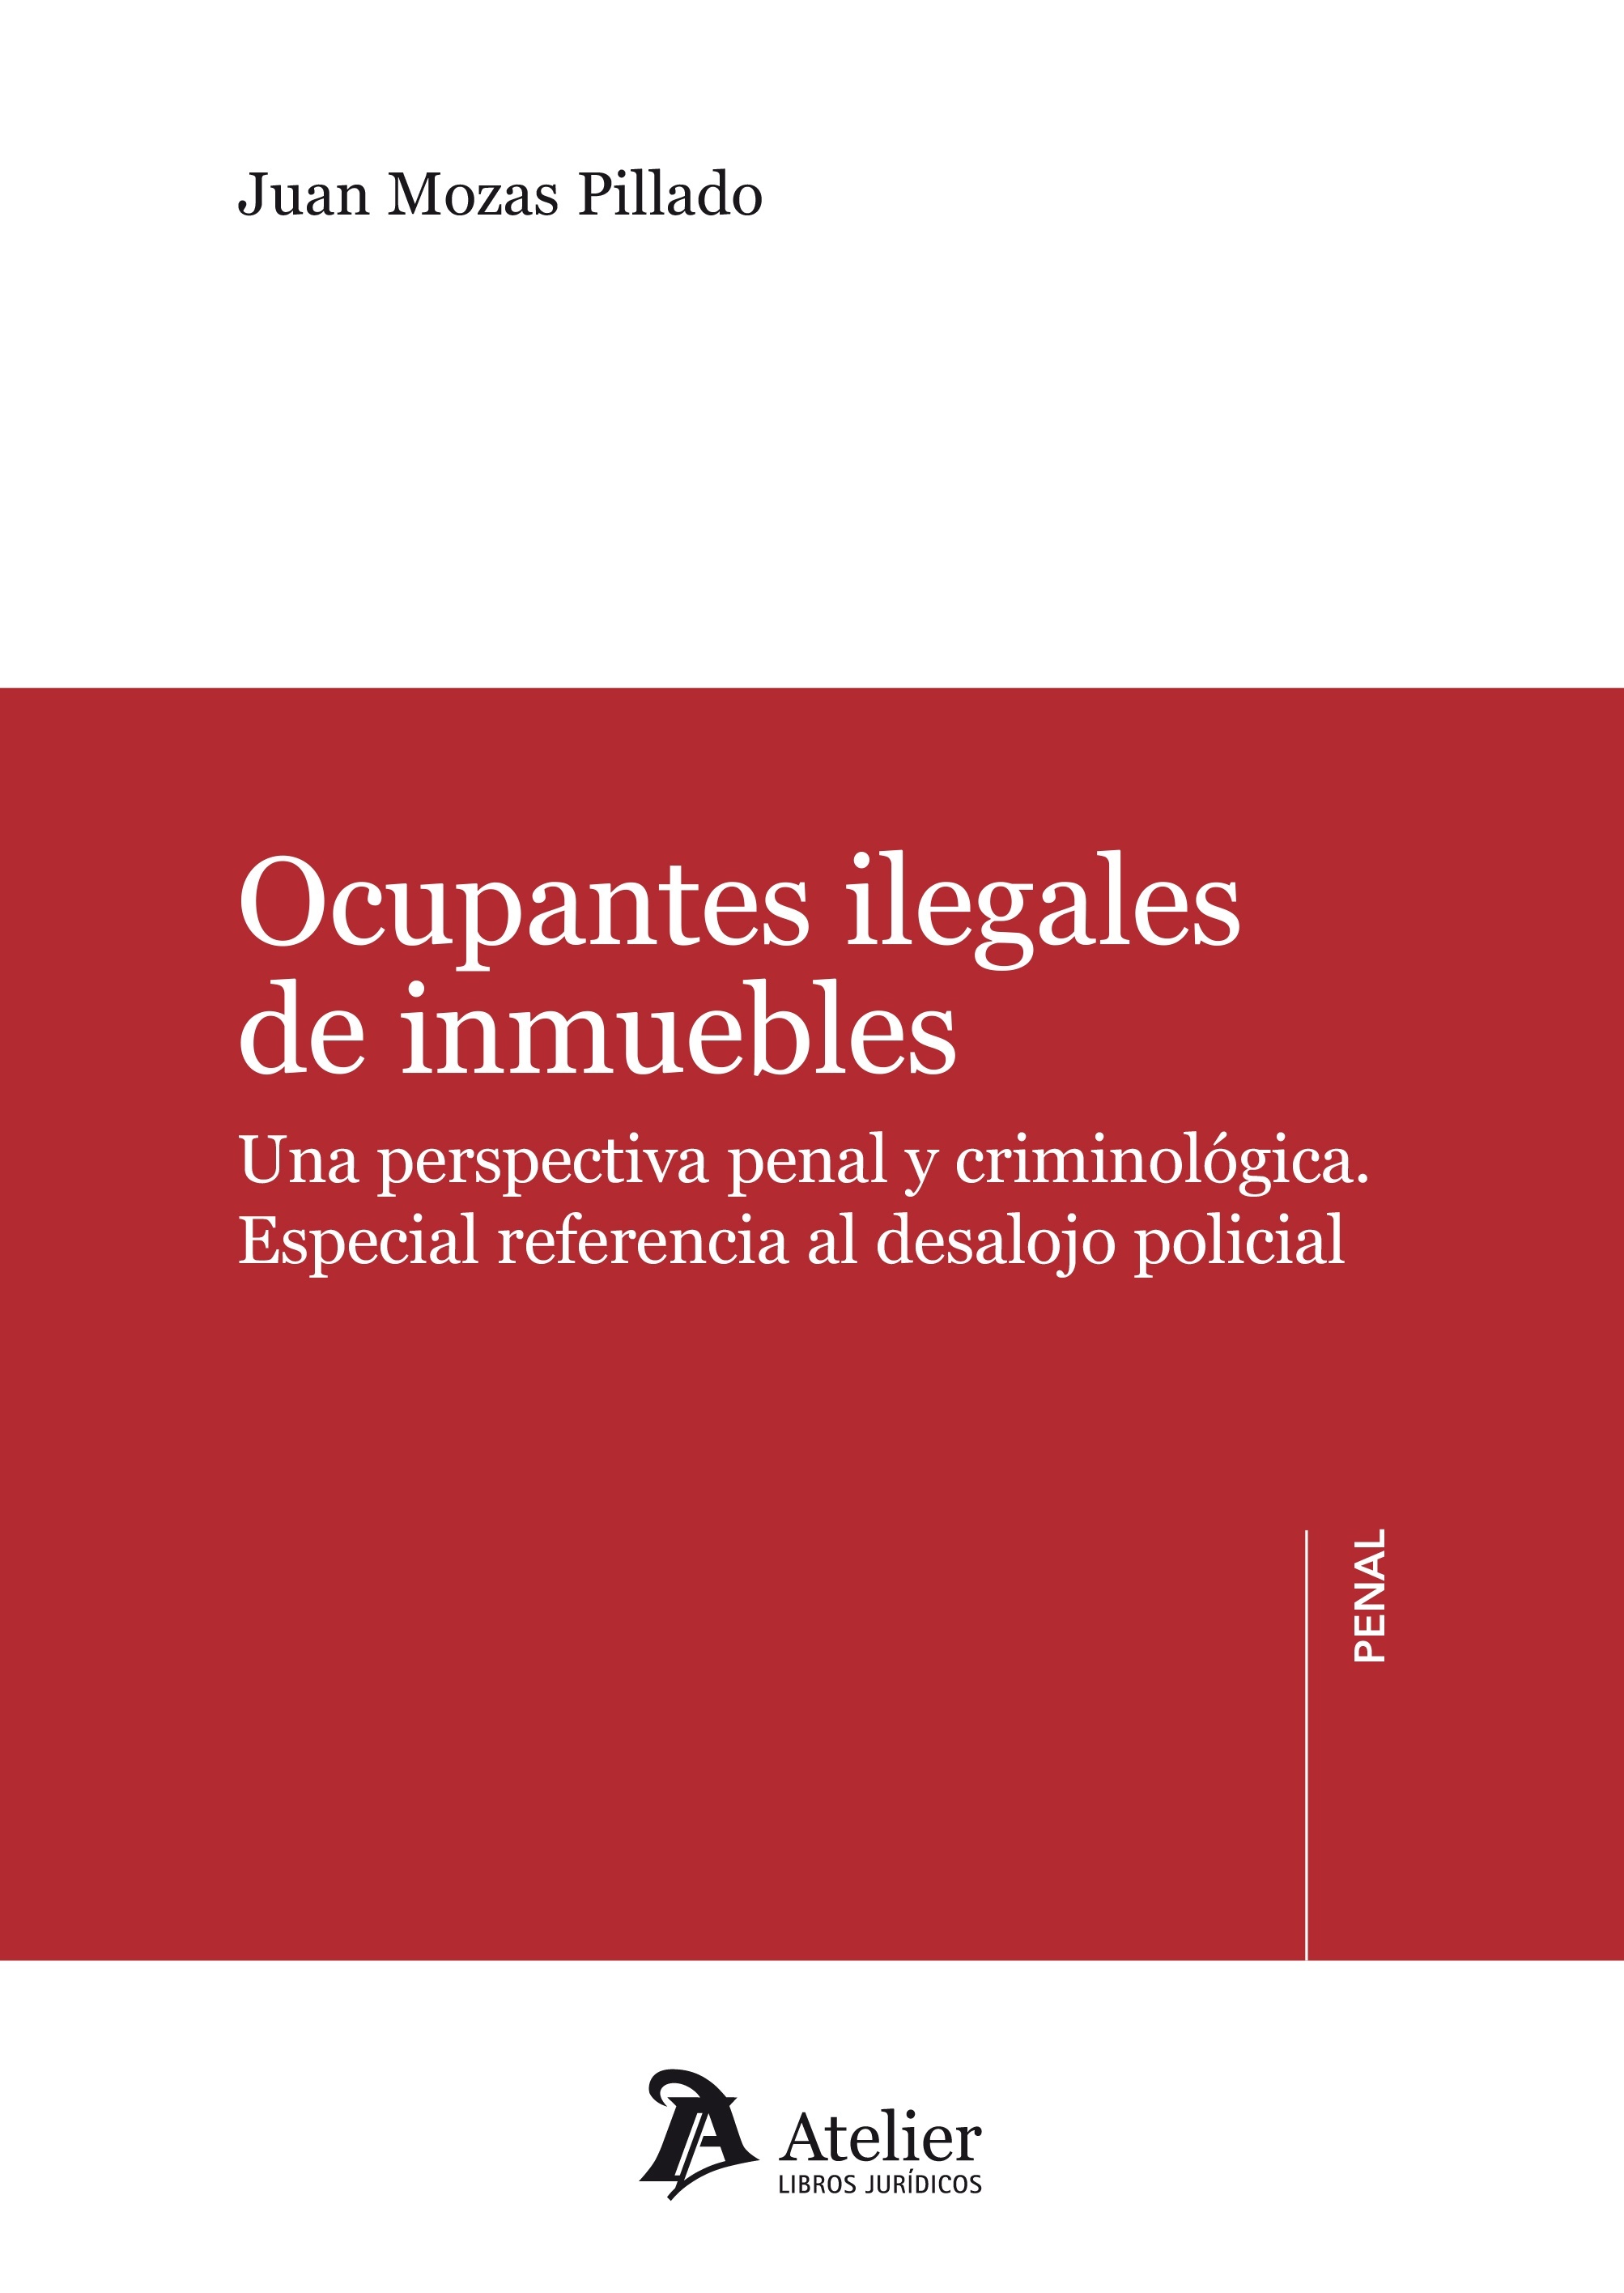 Ocupantes ilegales de inmuebles "Una perspectiva penal y criminológica.  Especial referencia al desalojo policial"